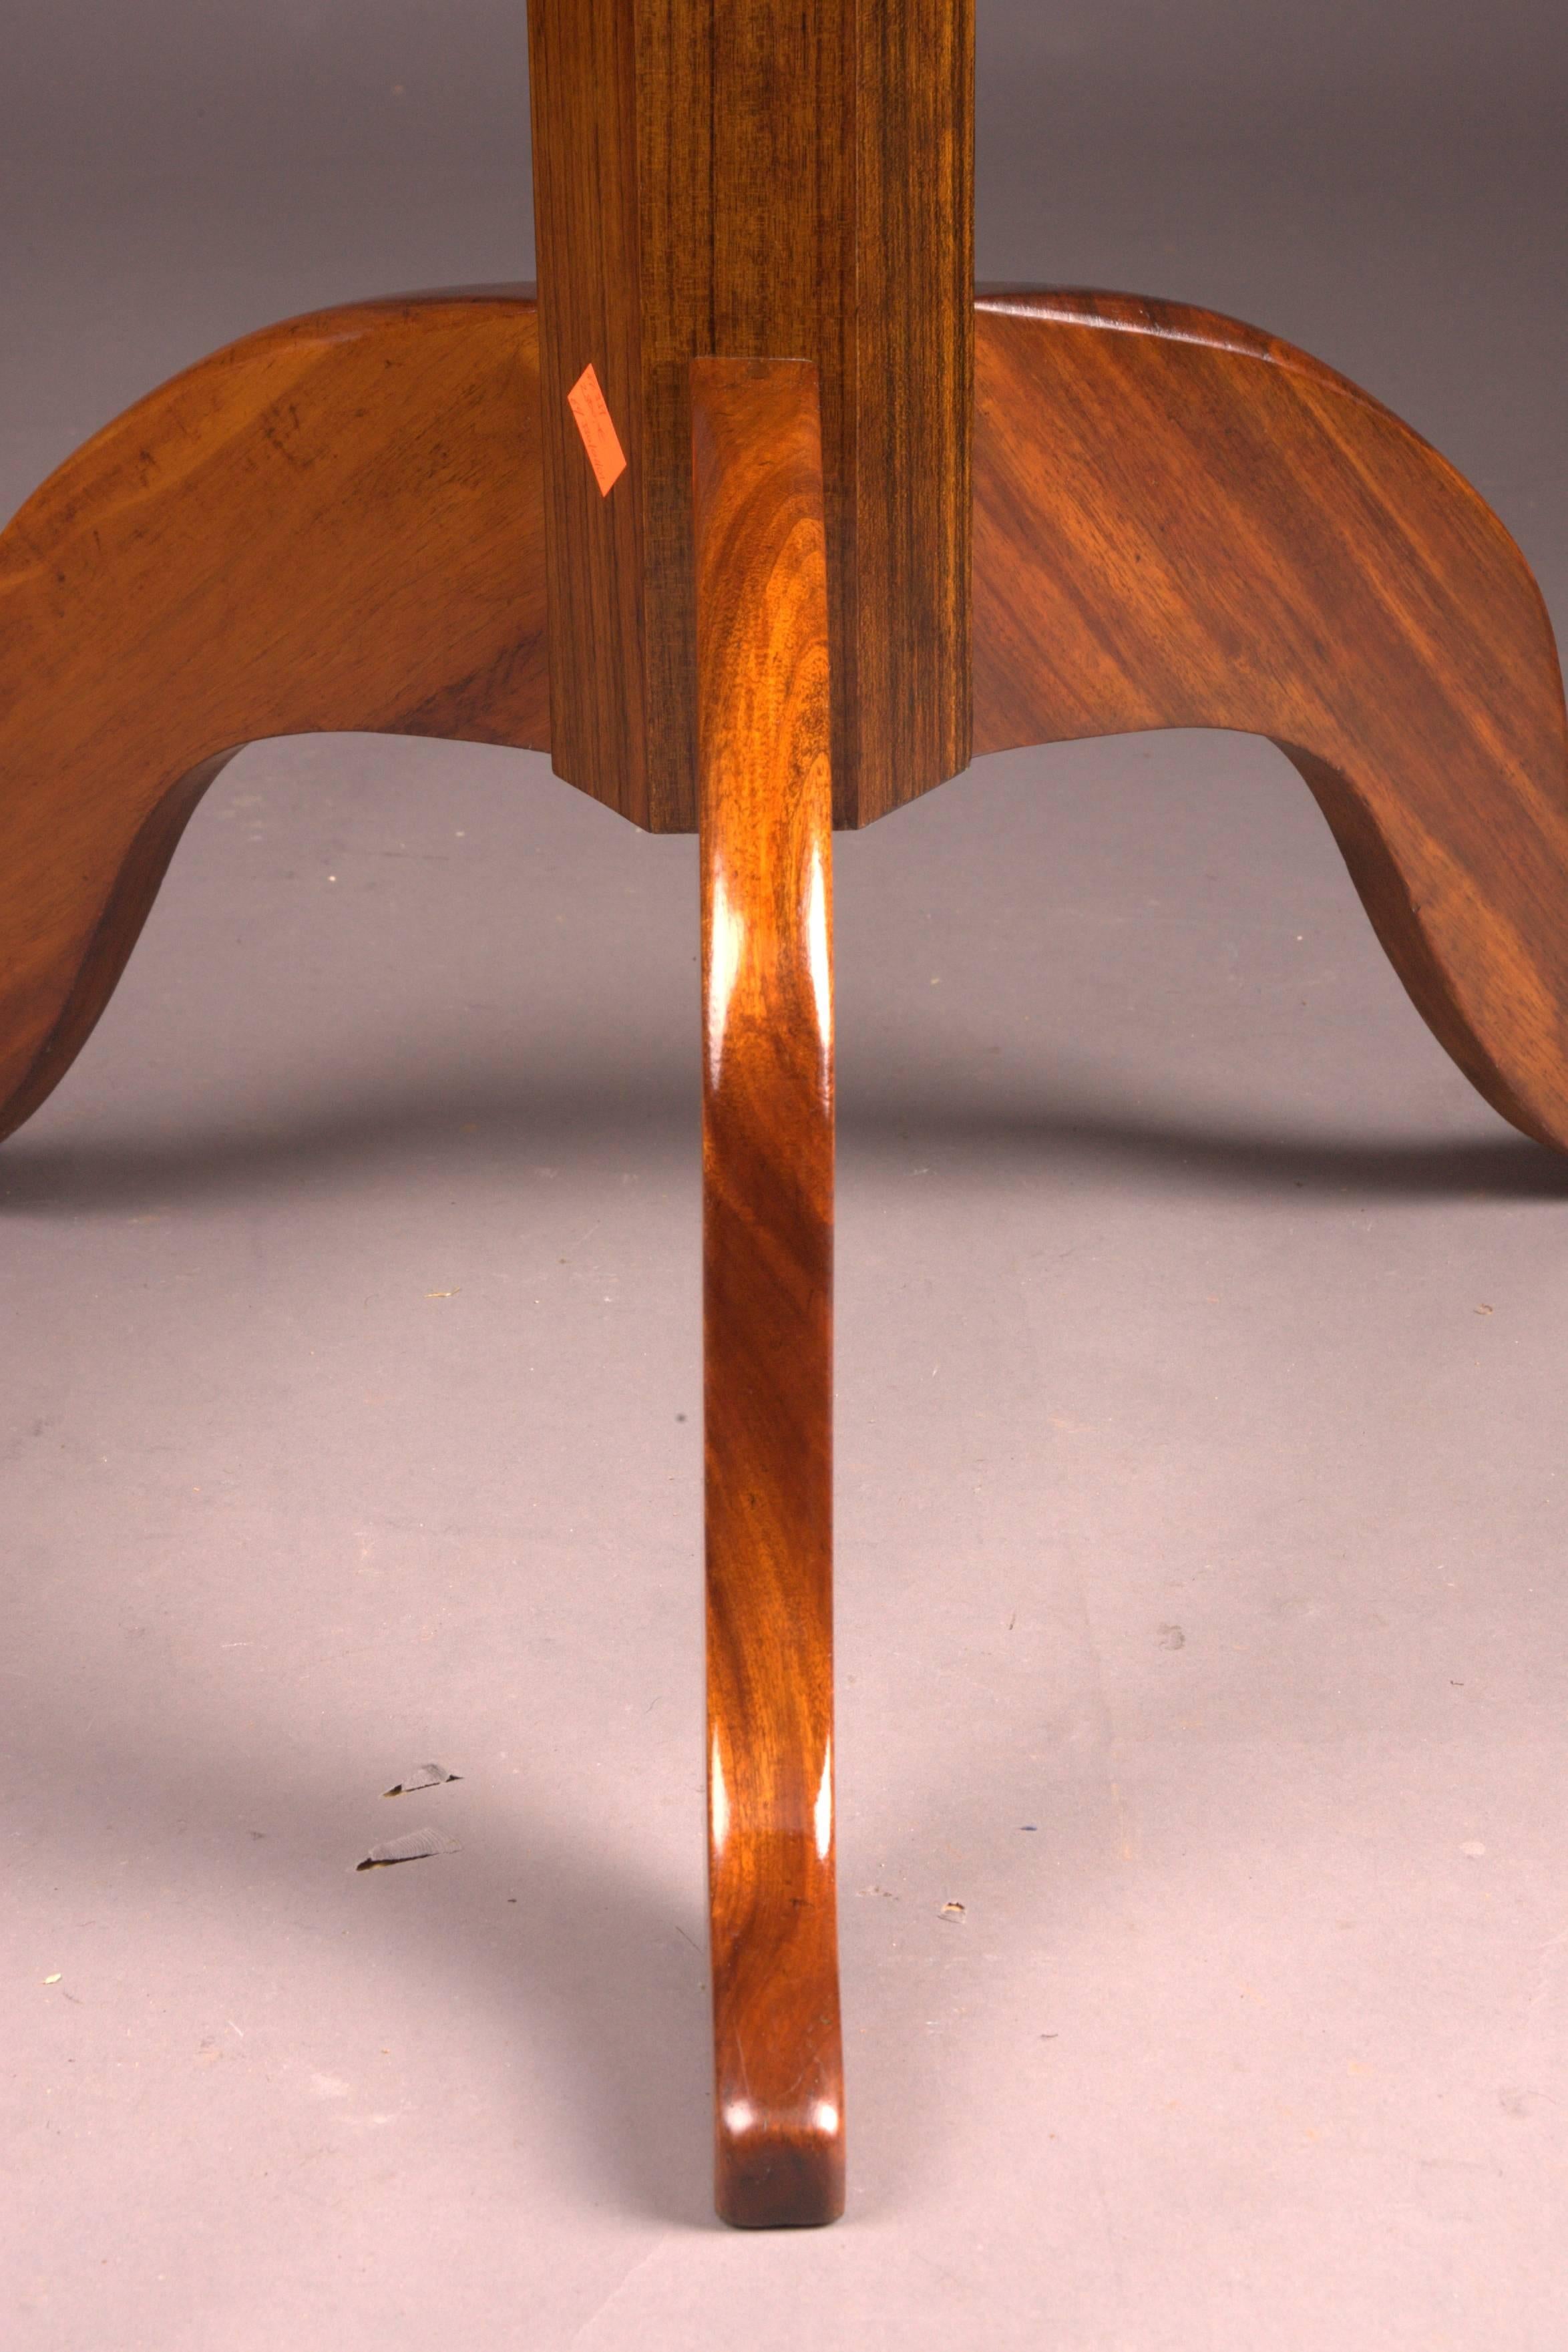 Original Antique Round Biedermeier Folding Table, circa 1820 Mahogany veneer For Sale 1